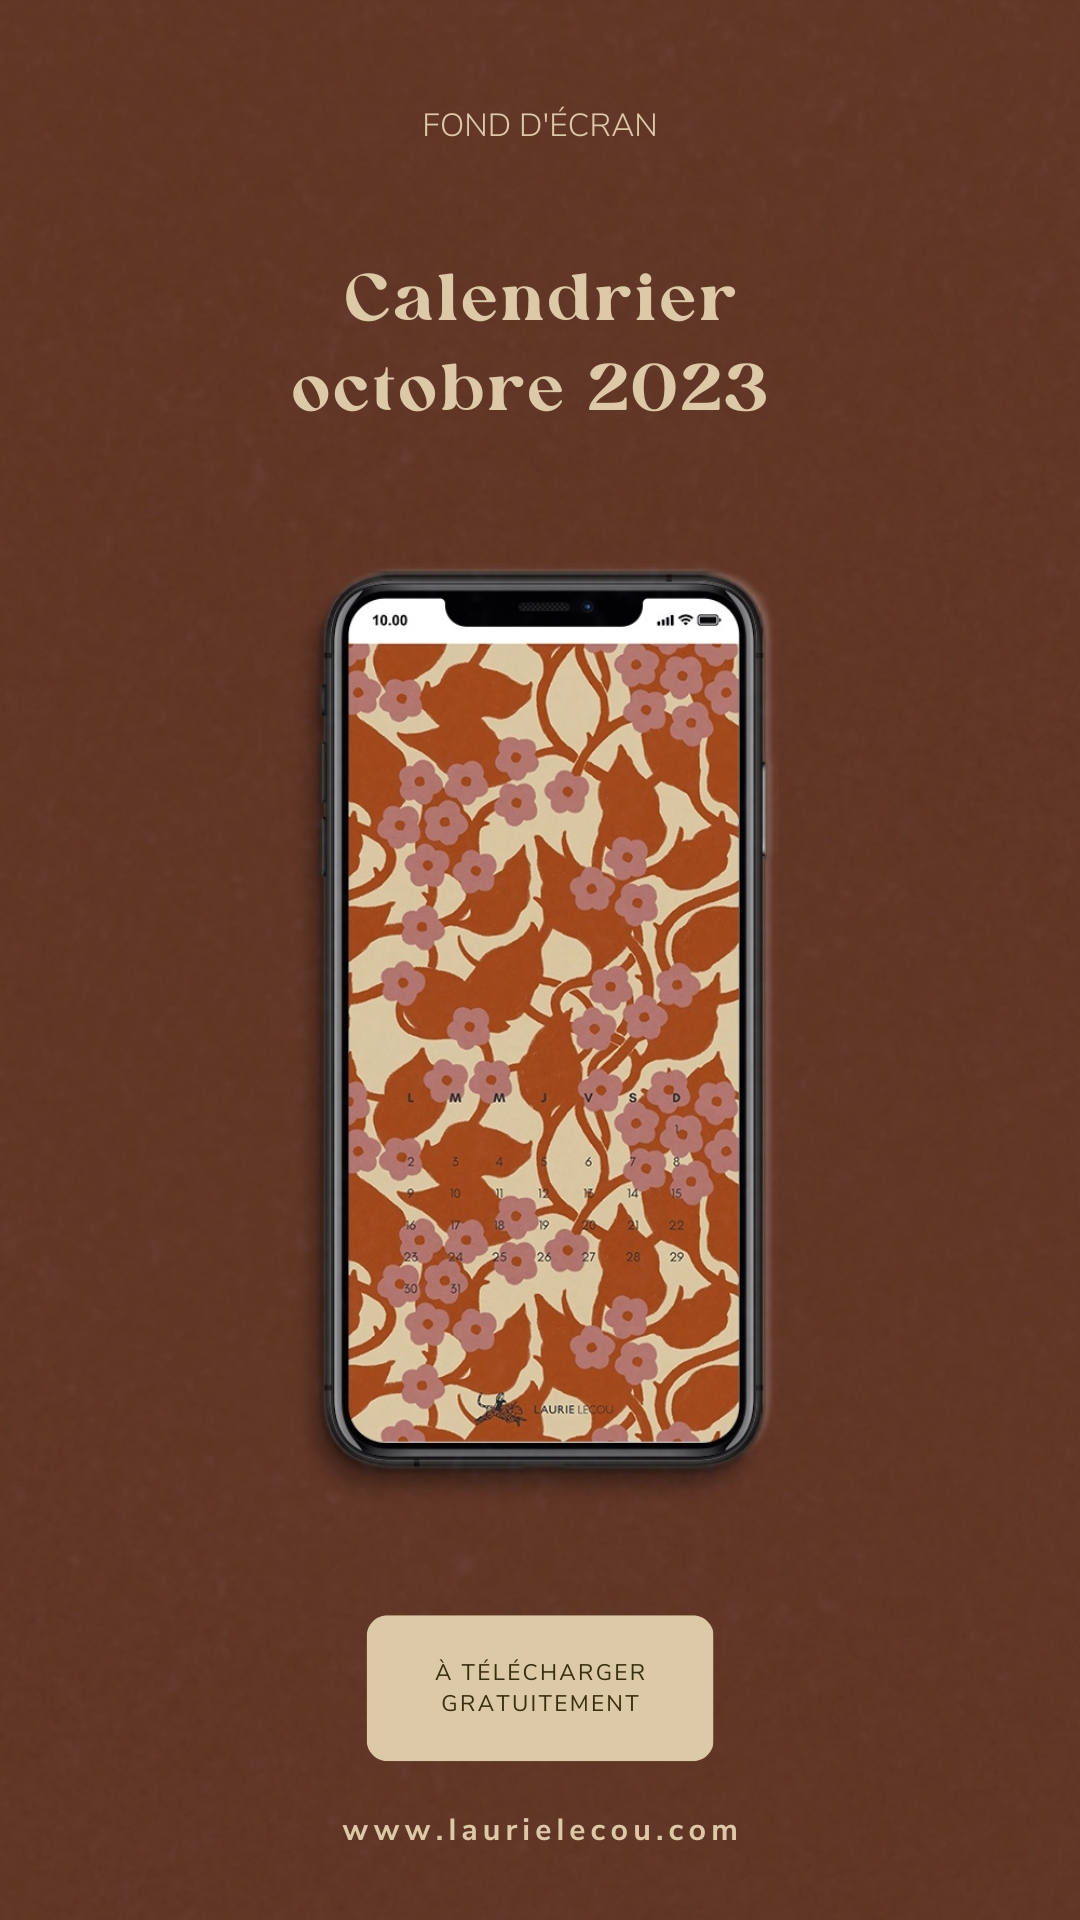 Fond d'écran de téléphone avec un motif floral aux tons orangés